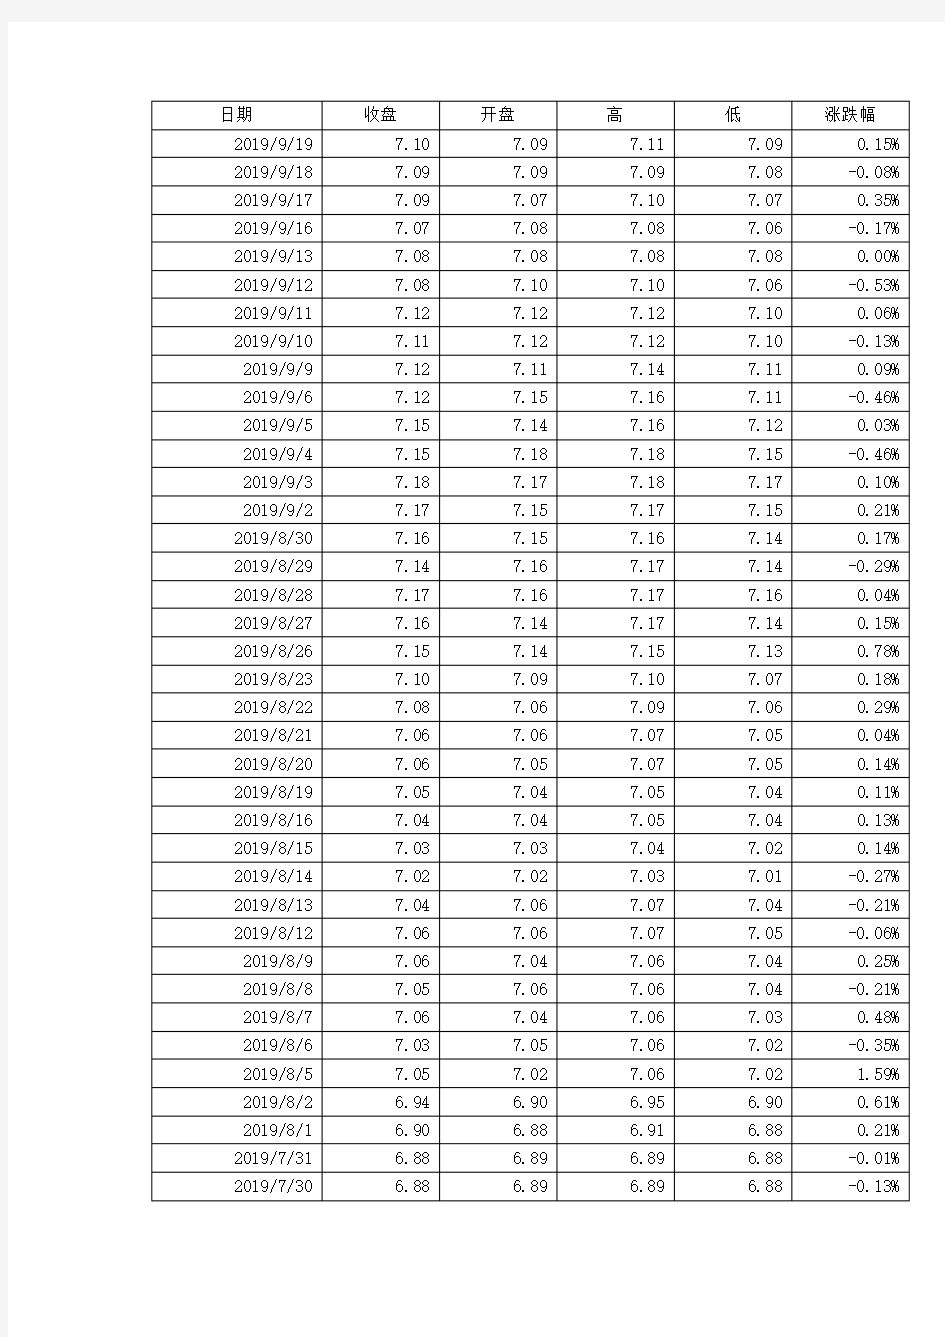 人民币兑美元汇率最新逐日数据(2000年1月3日-2019年9月19日)